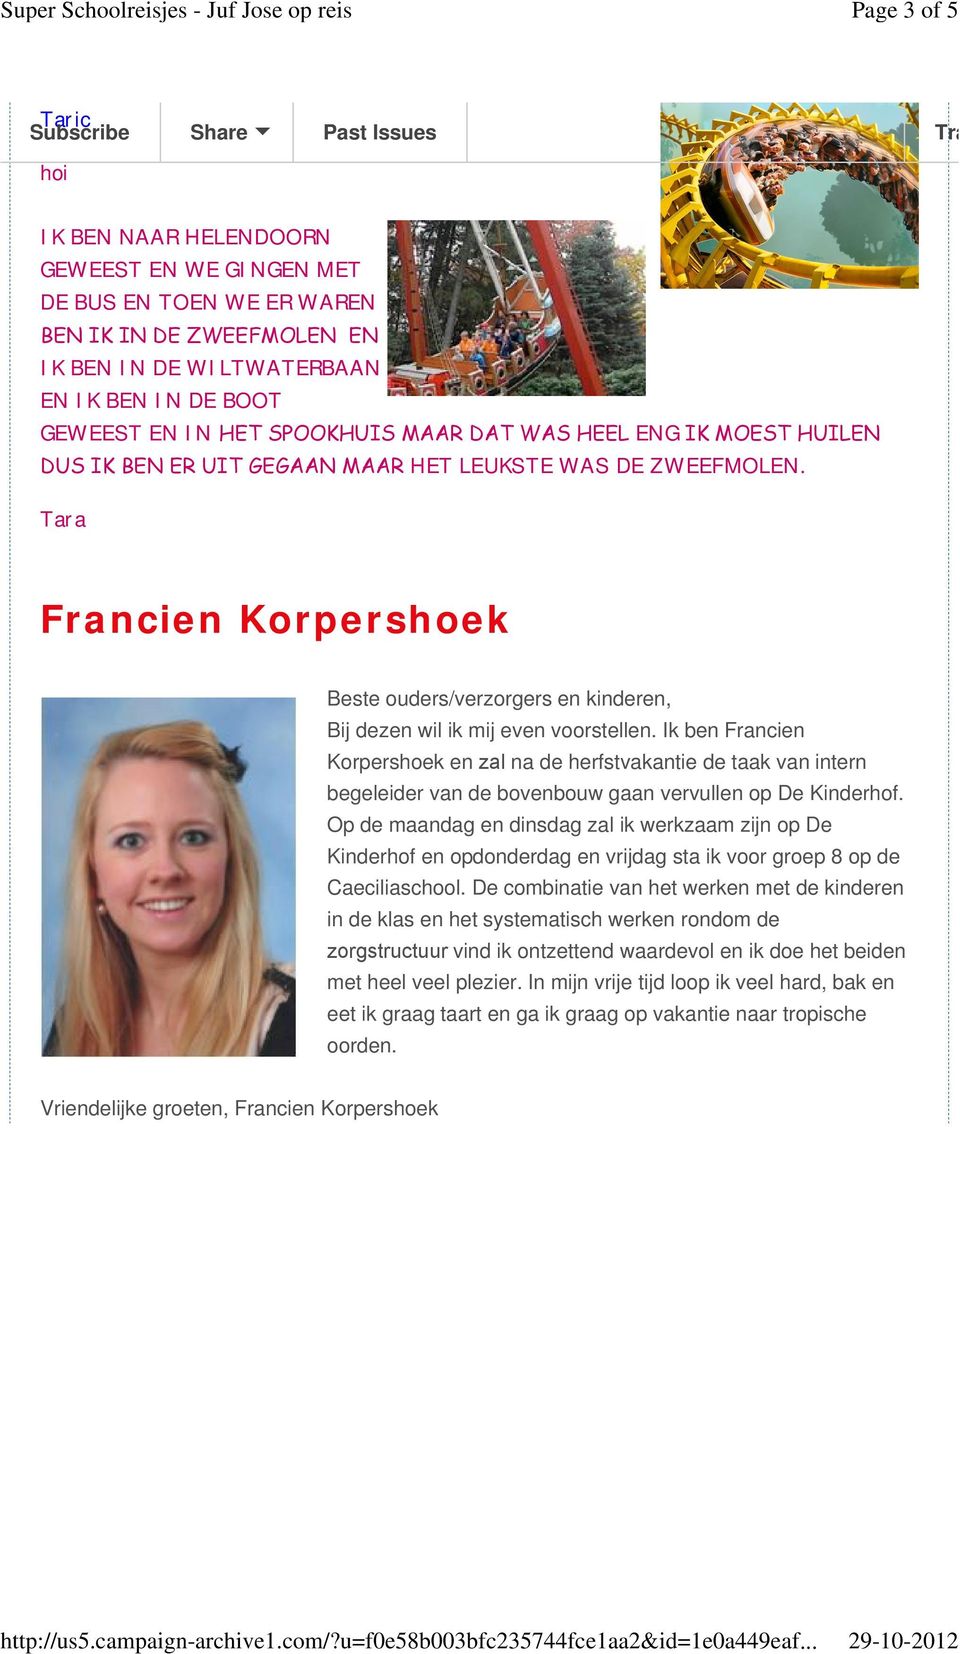 Ik ben Francien Korpershoek en zal na de herfstvakantie de taak van intern begeleider van de bovenbouw gaan vervullen op De Kinderhof.